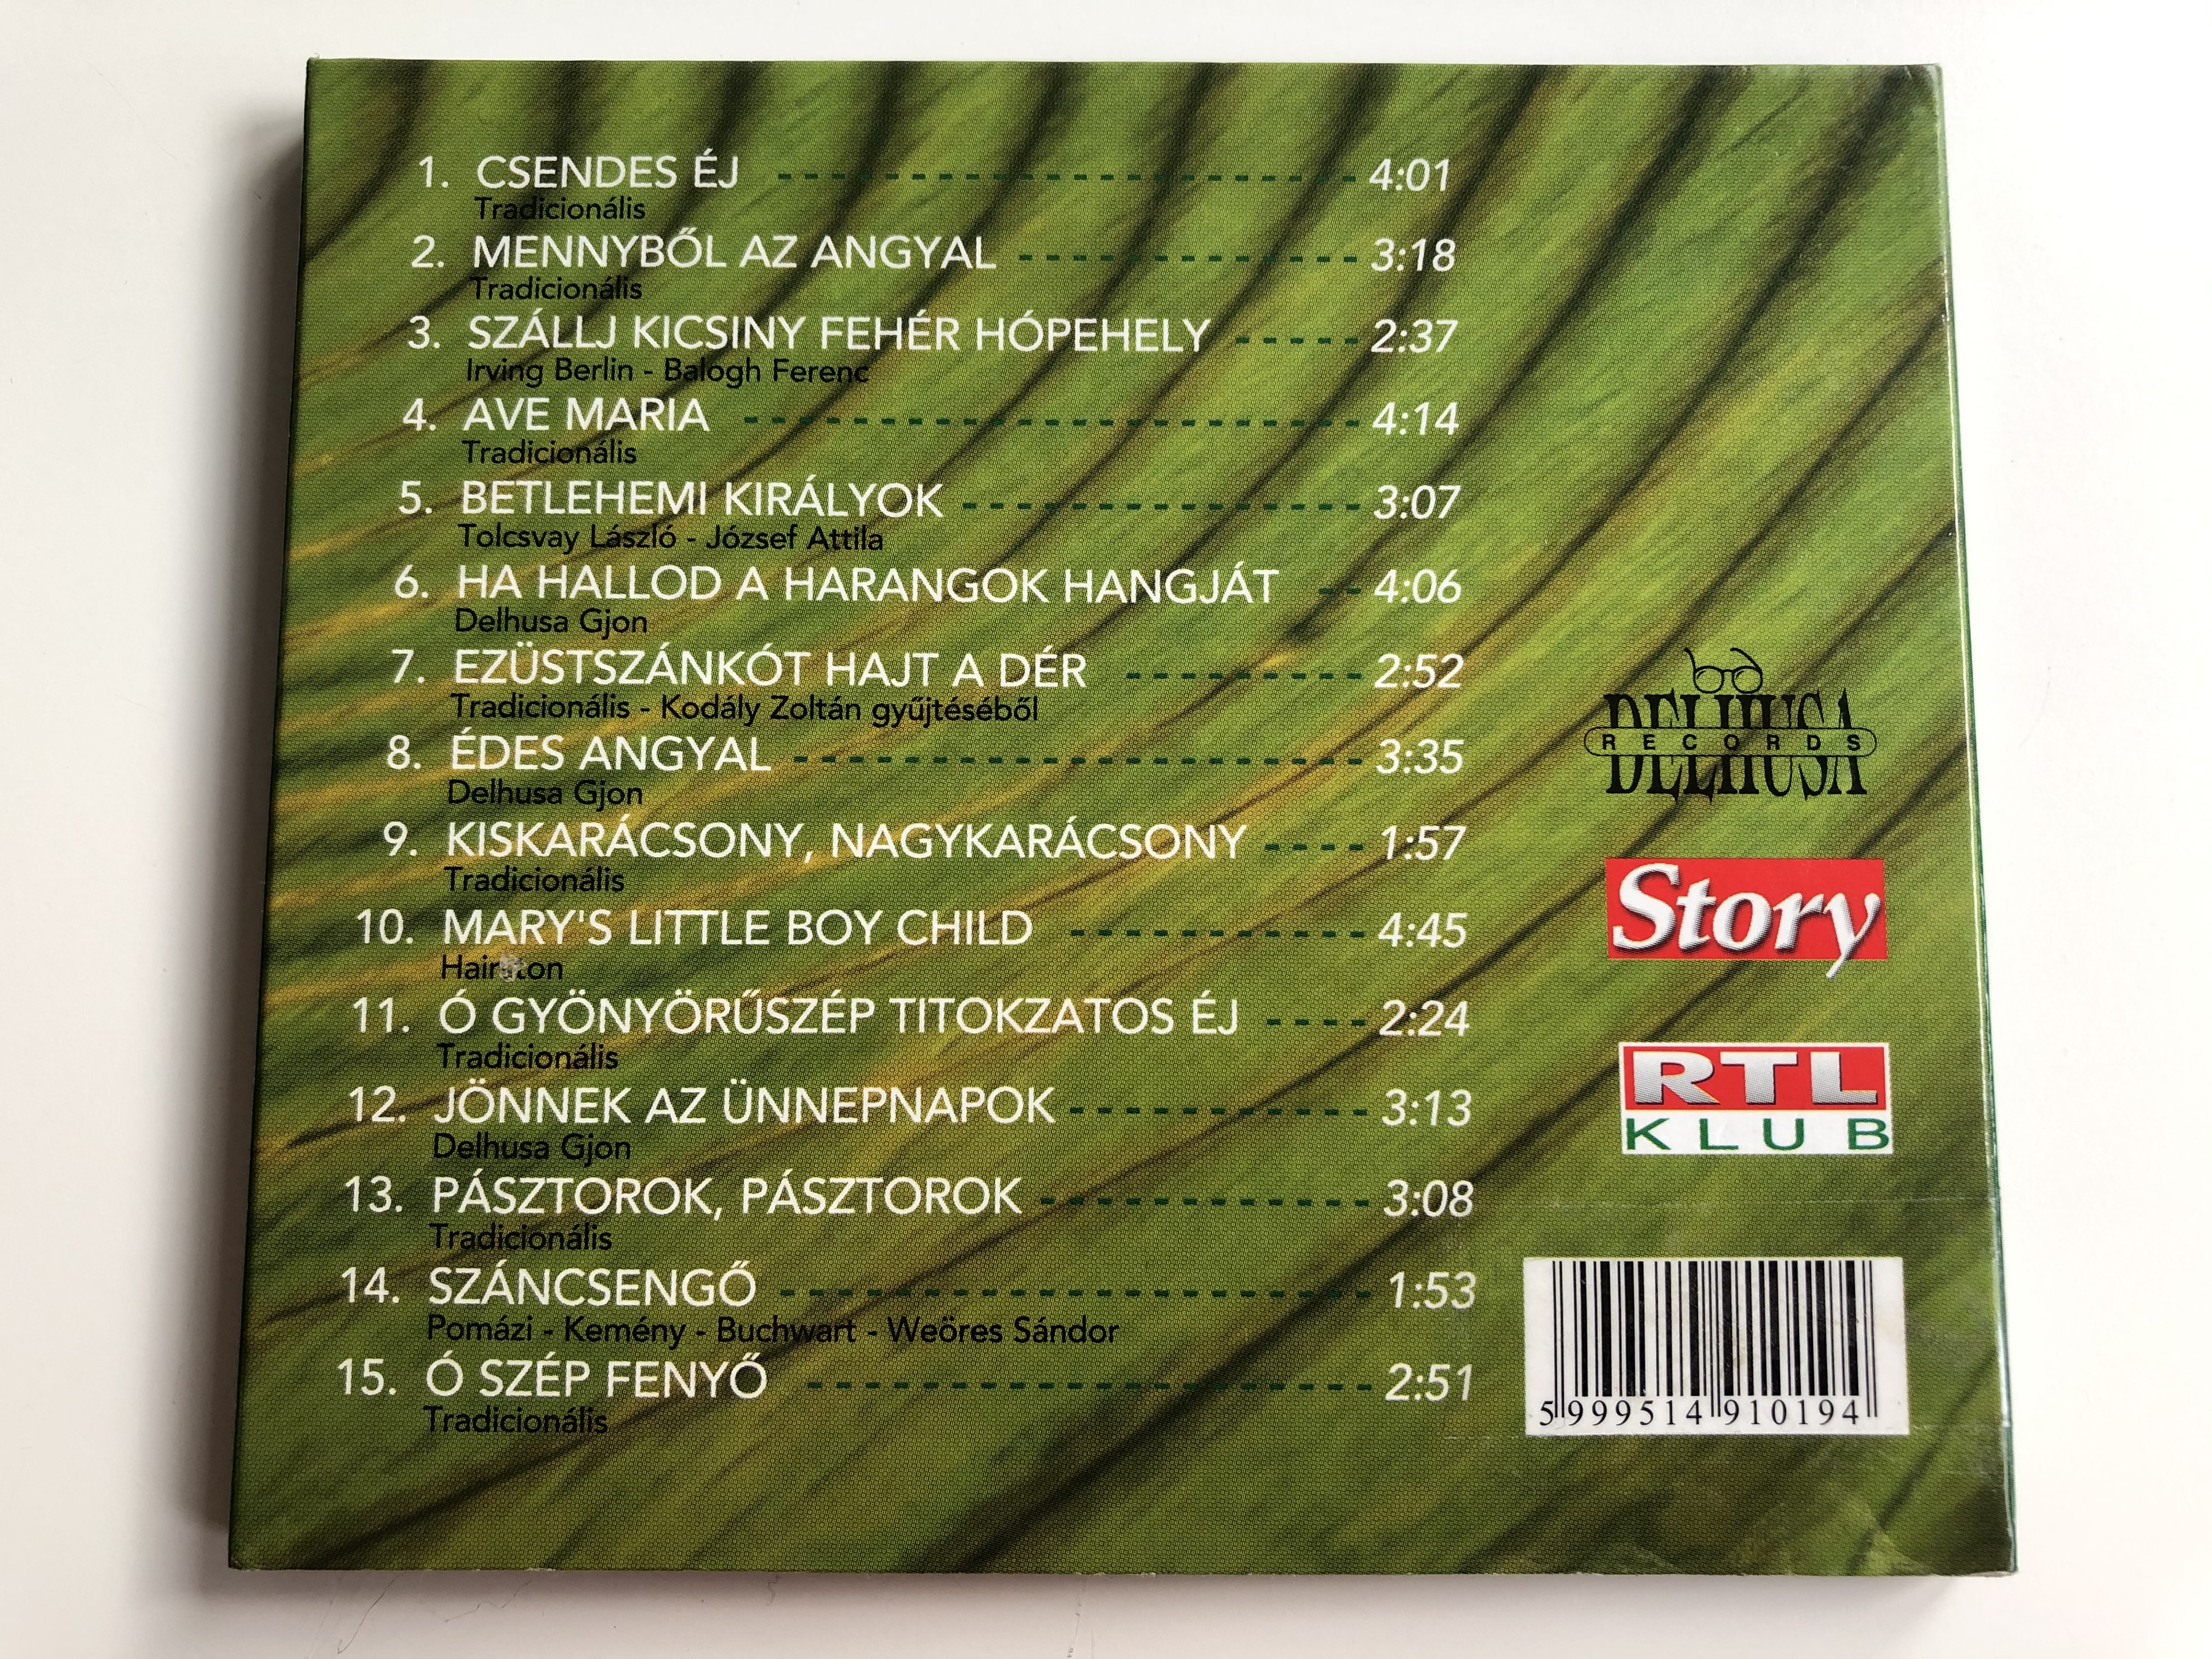 delhusa-johnny-kar-csony-delhusa-records-audio-cd-2001-cdd-012-6-.jpg